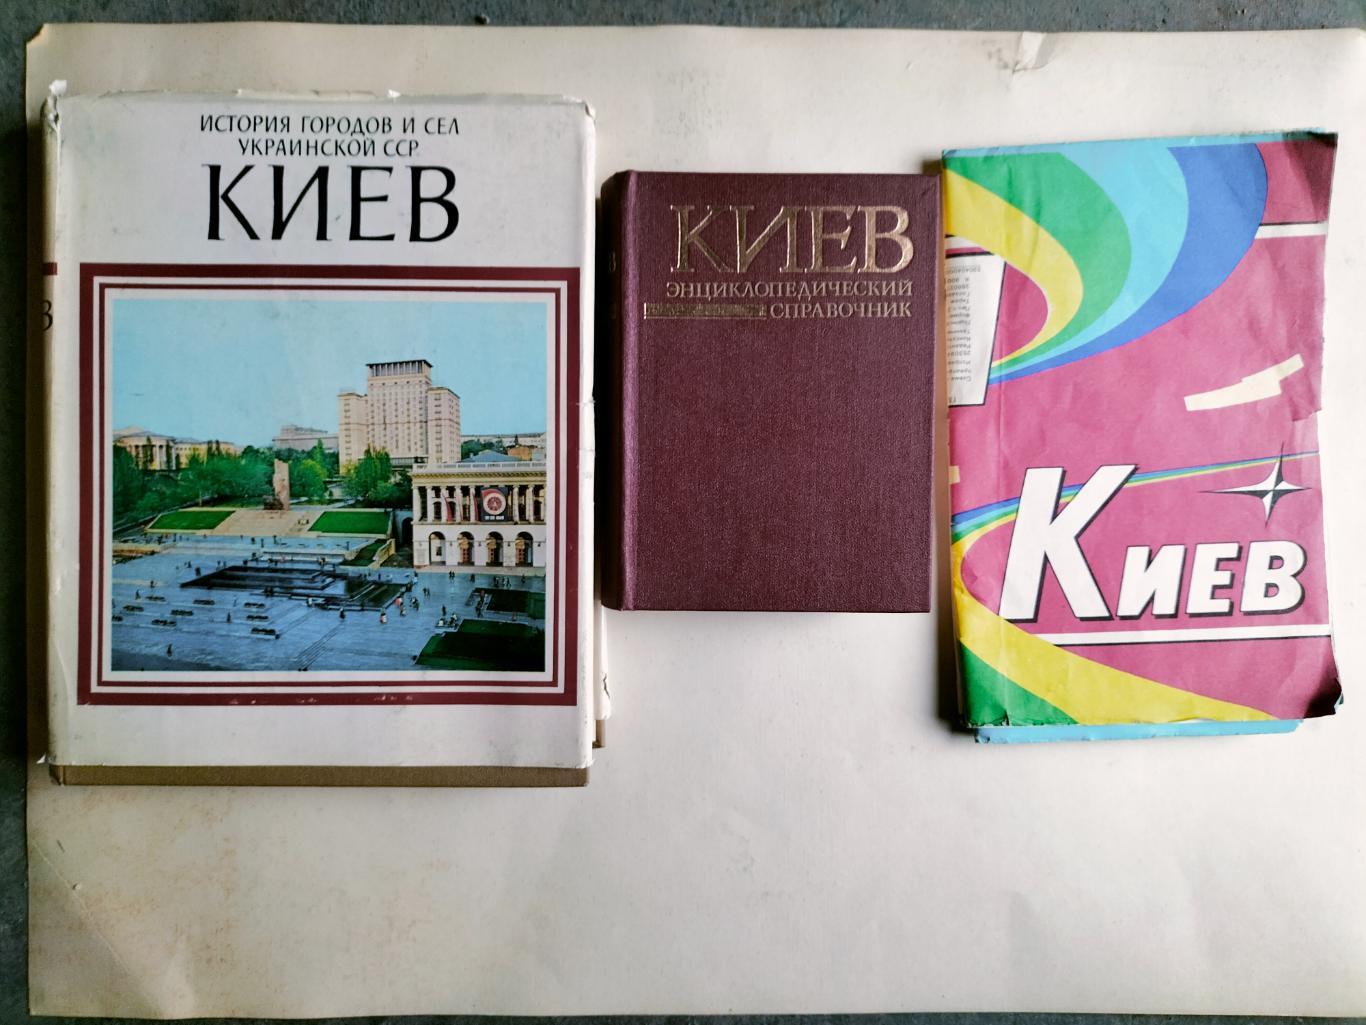 Киев ( книги и атлас)